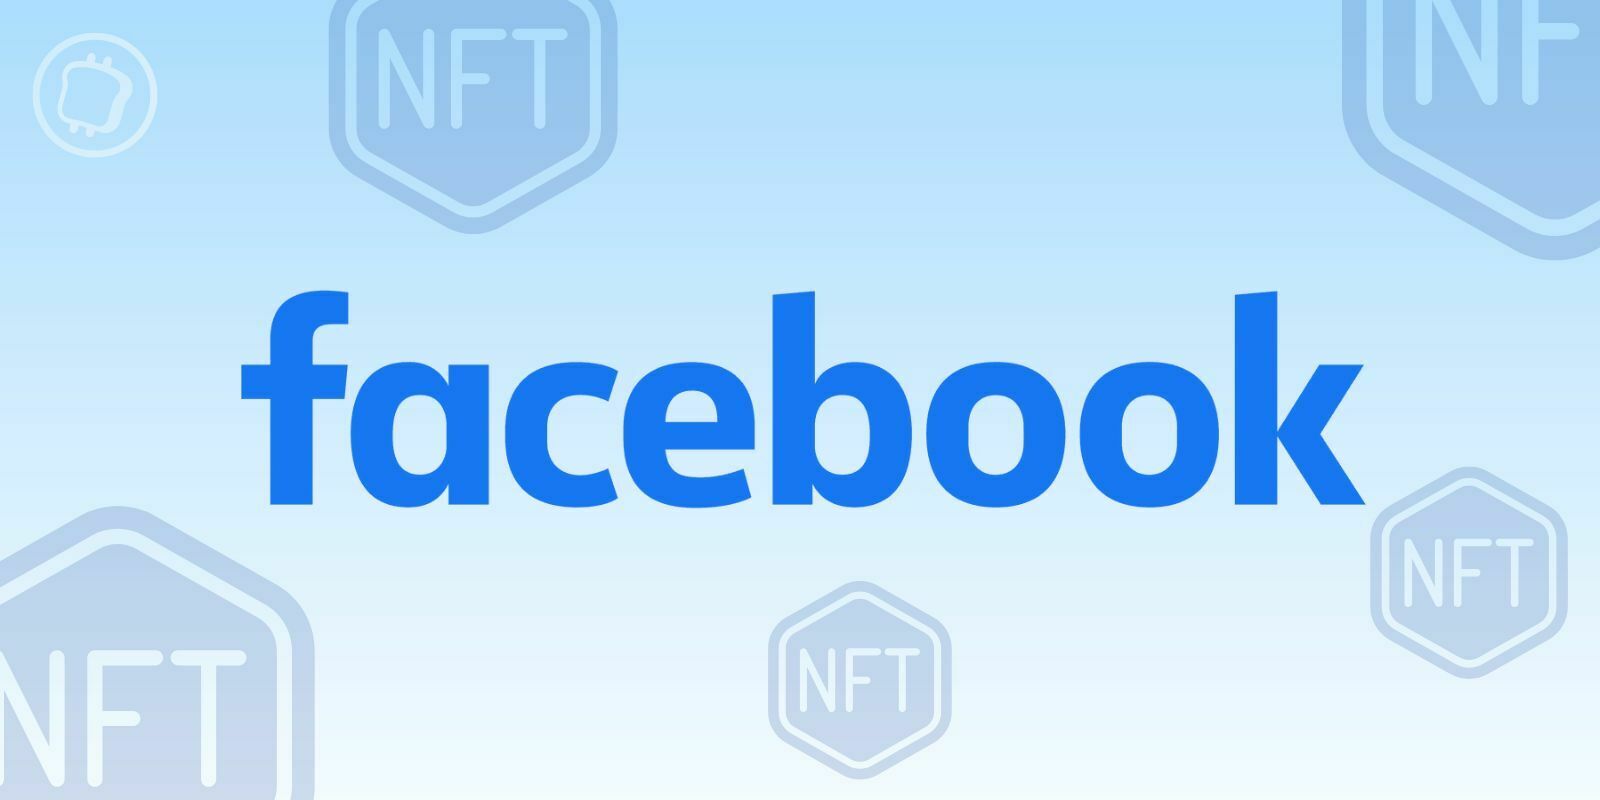 Après Instagram, Facebook permet maintenant d’afficher ses NFTs en connectant son wallet